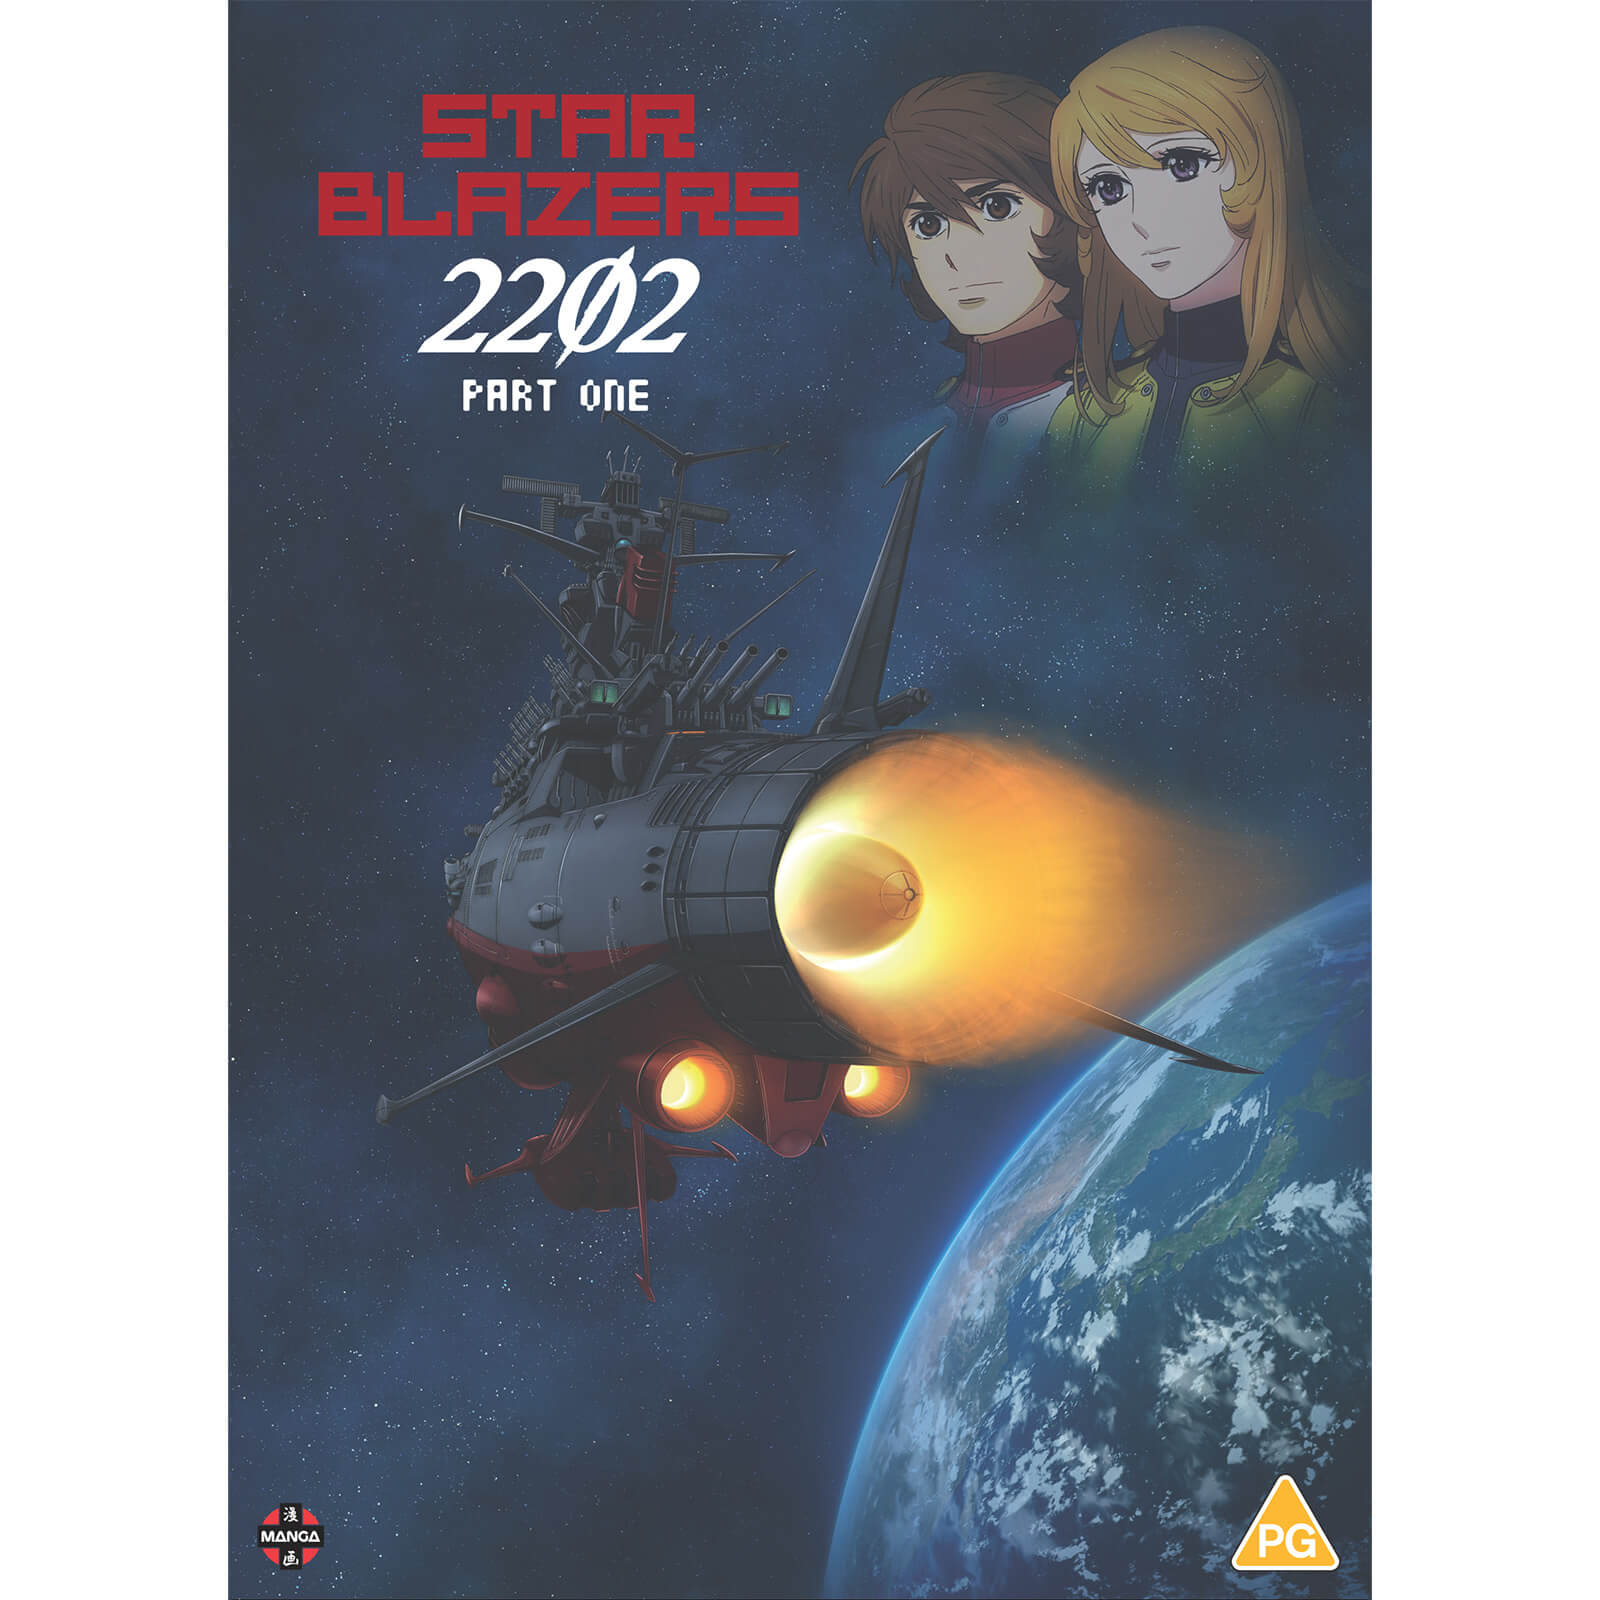 Star Blazers Space Battleship Yamato 2202 :Premiere Partie